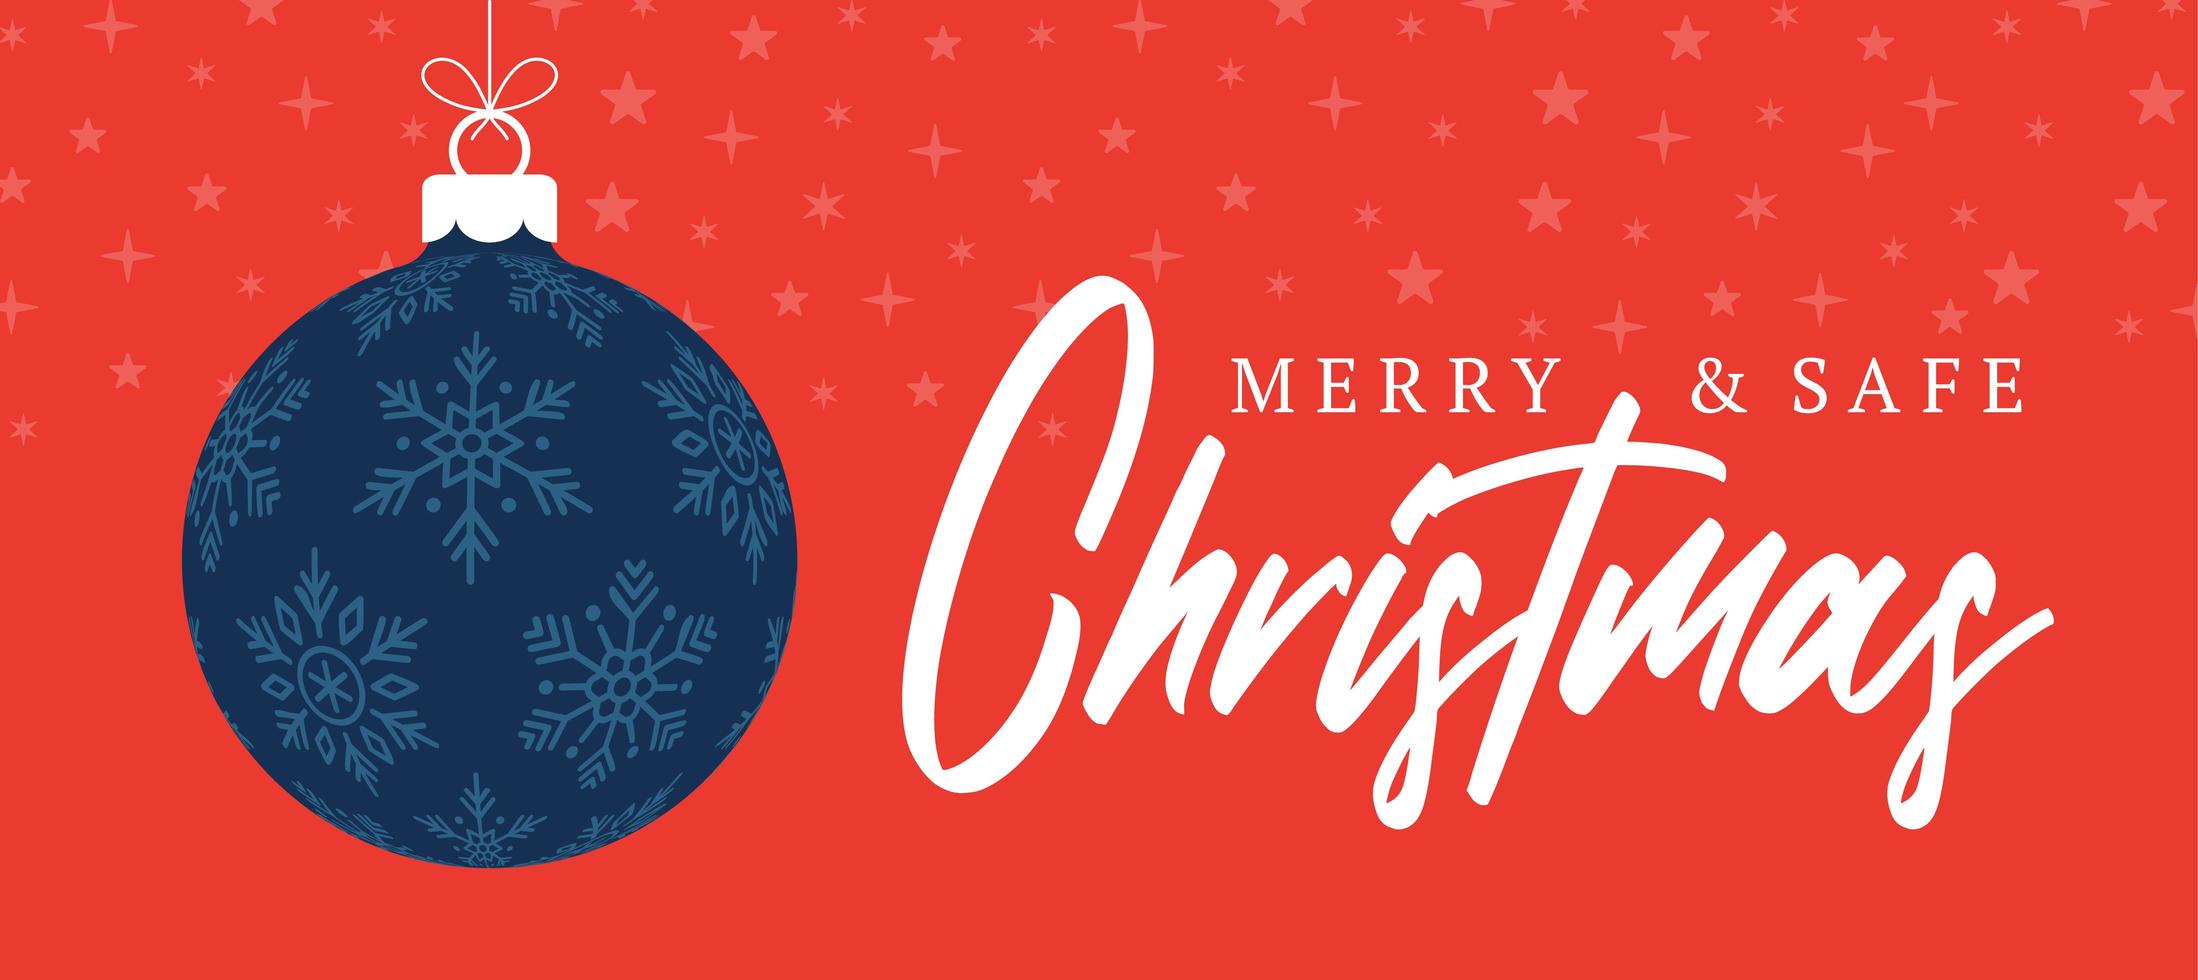 banner di Natale allegro e sicuro. illustrazione vettoriale con palla albero di Natale e testo scritta. ferie causa coronavirus